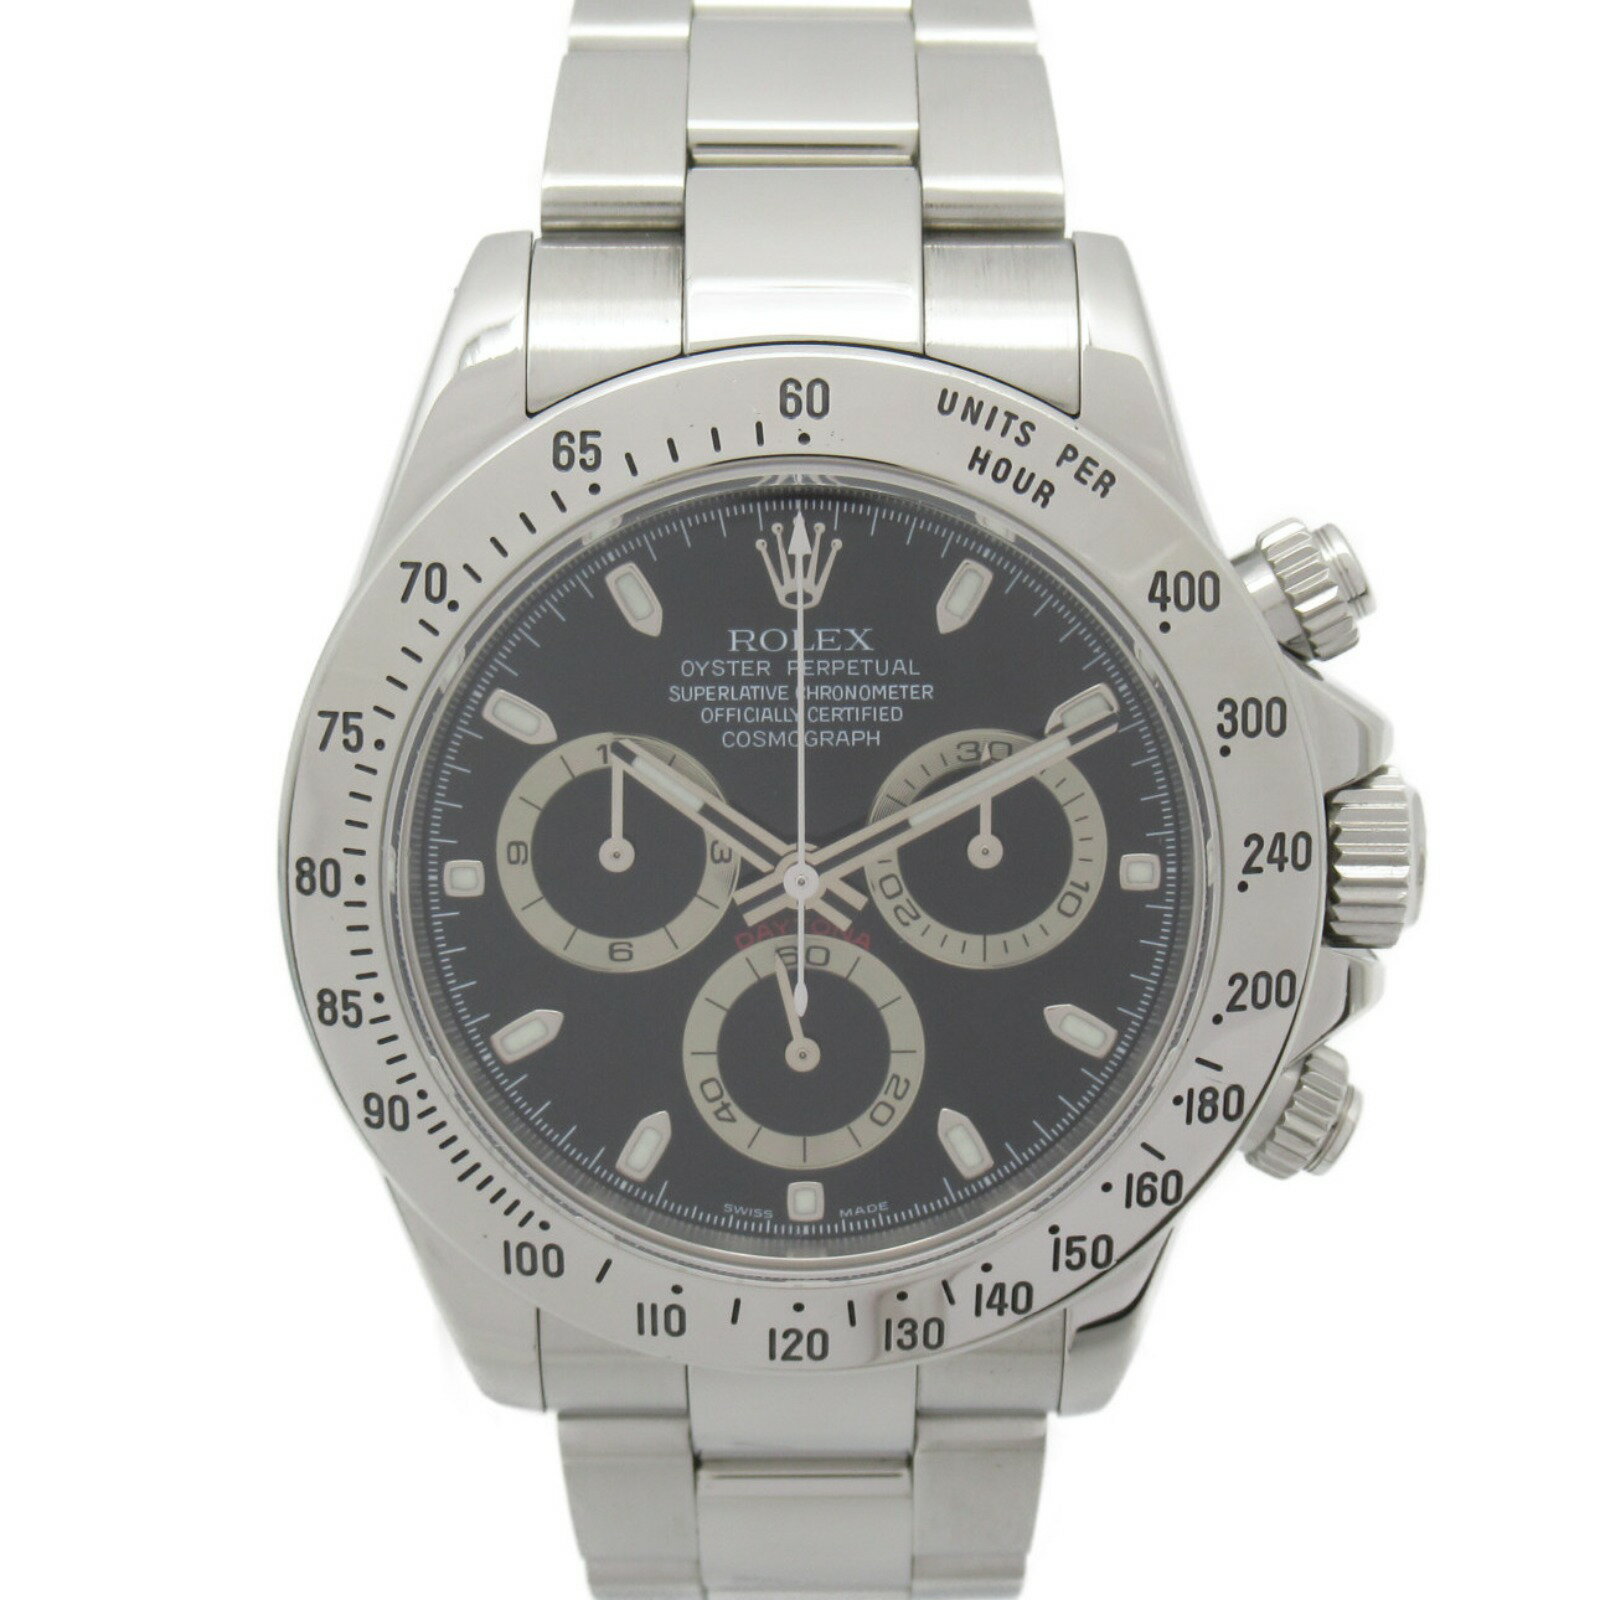 ロレックス ROLEX デイトナ 腕時計 時計 ステンレススチール メンズ ブラック系 116520 【中古】 | ブランド ブランド時計 ブランド腕時計 ウォッチ